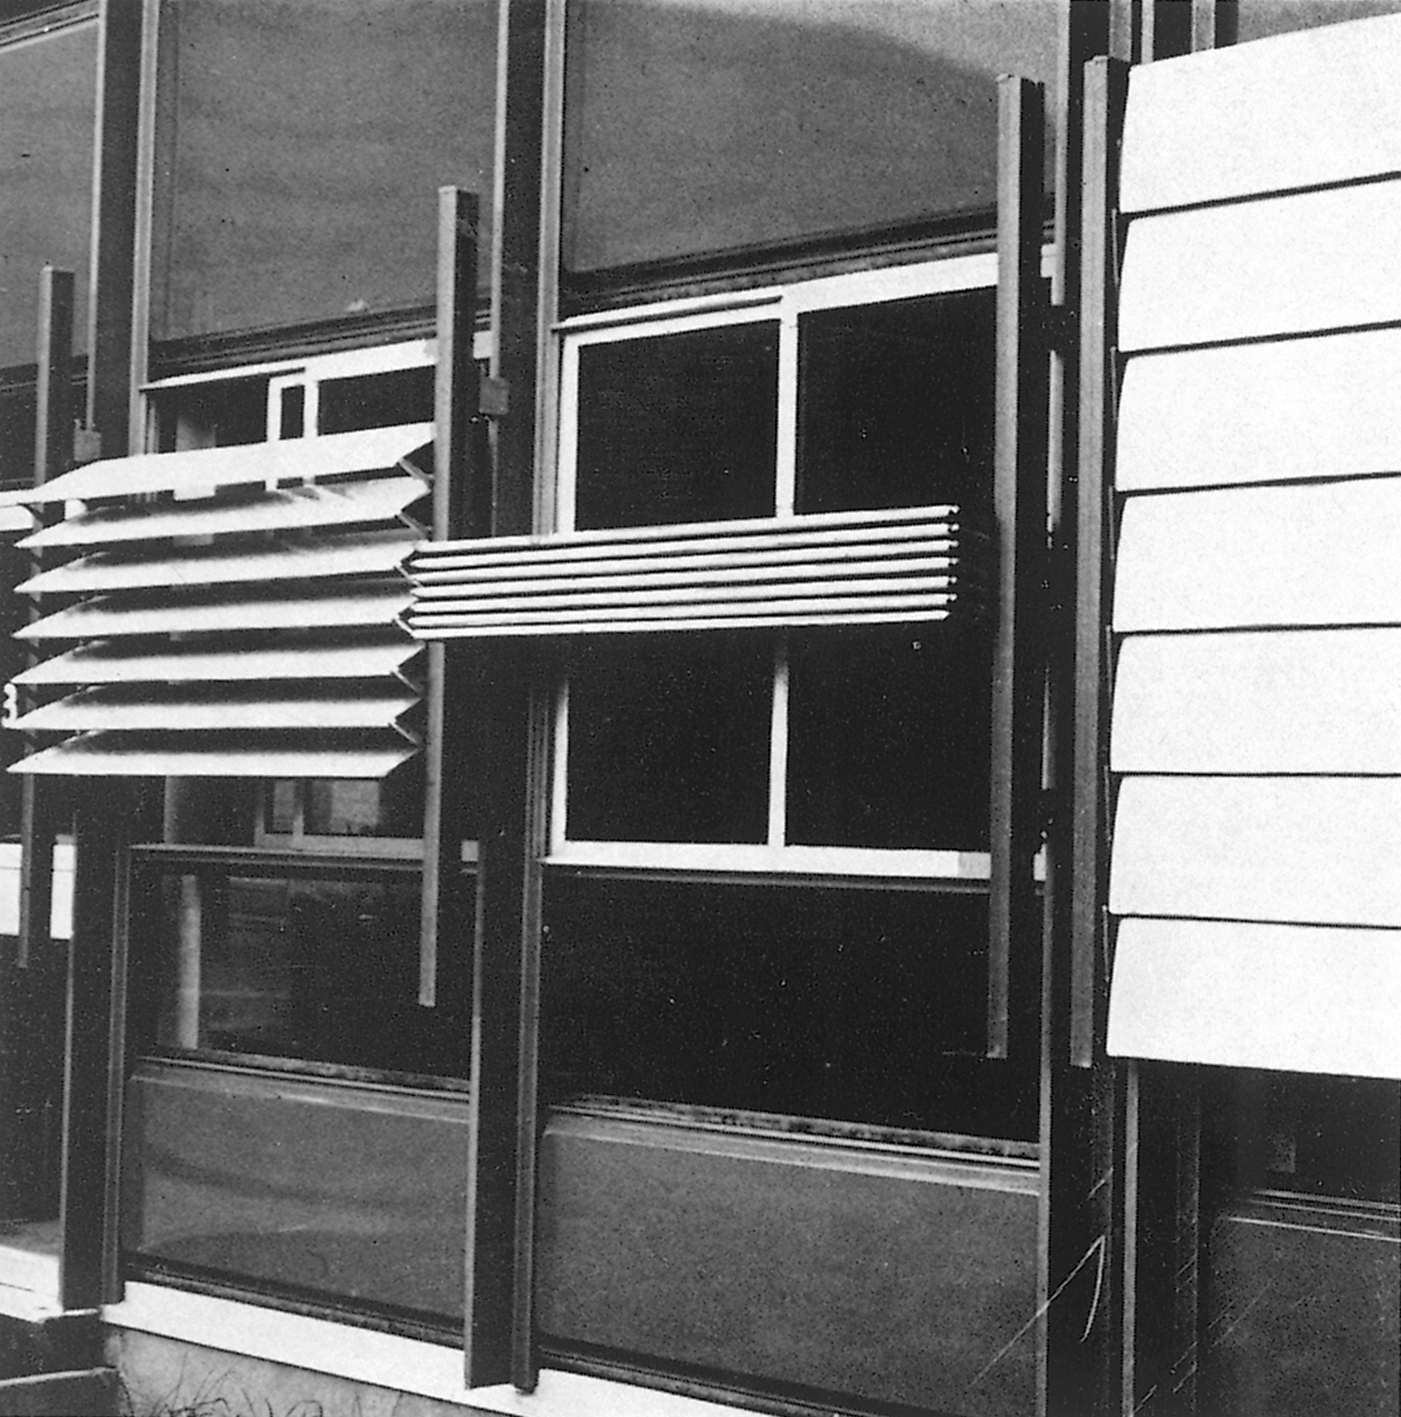 La Dullague school complex, Béziers (architects D. Badani, P. Roux-Dorlut, 1964). Adjustable sun shutter facade panels designed by Jean Prouvé, c. 1965.